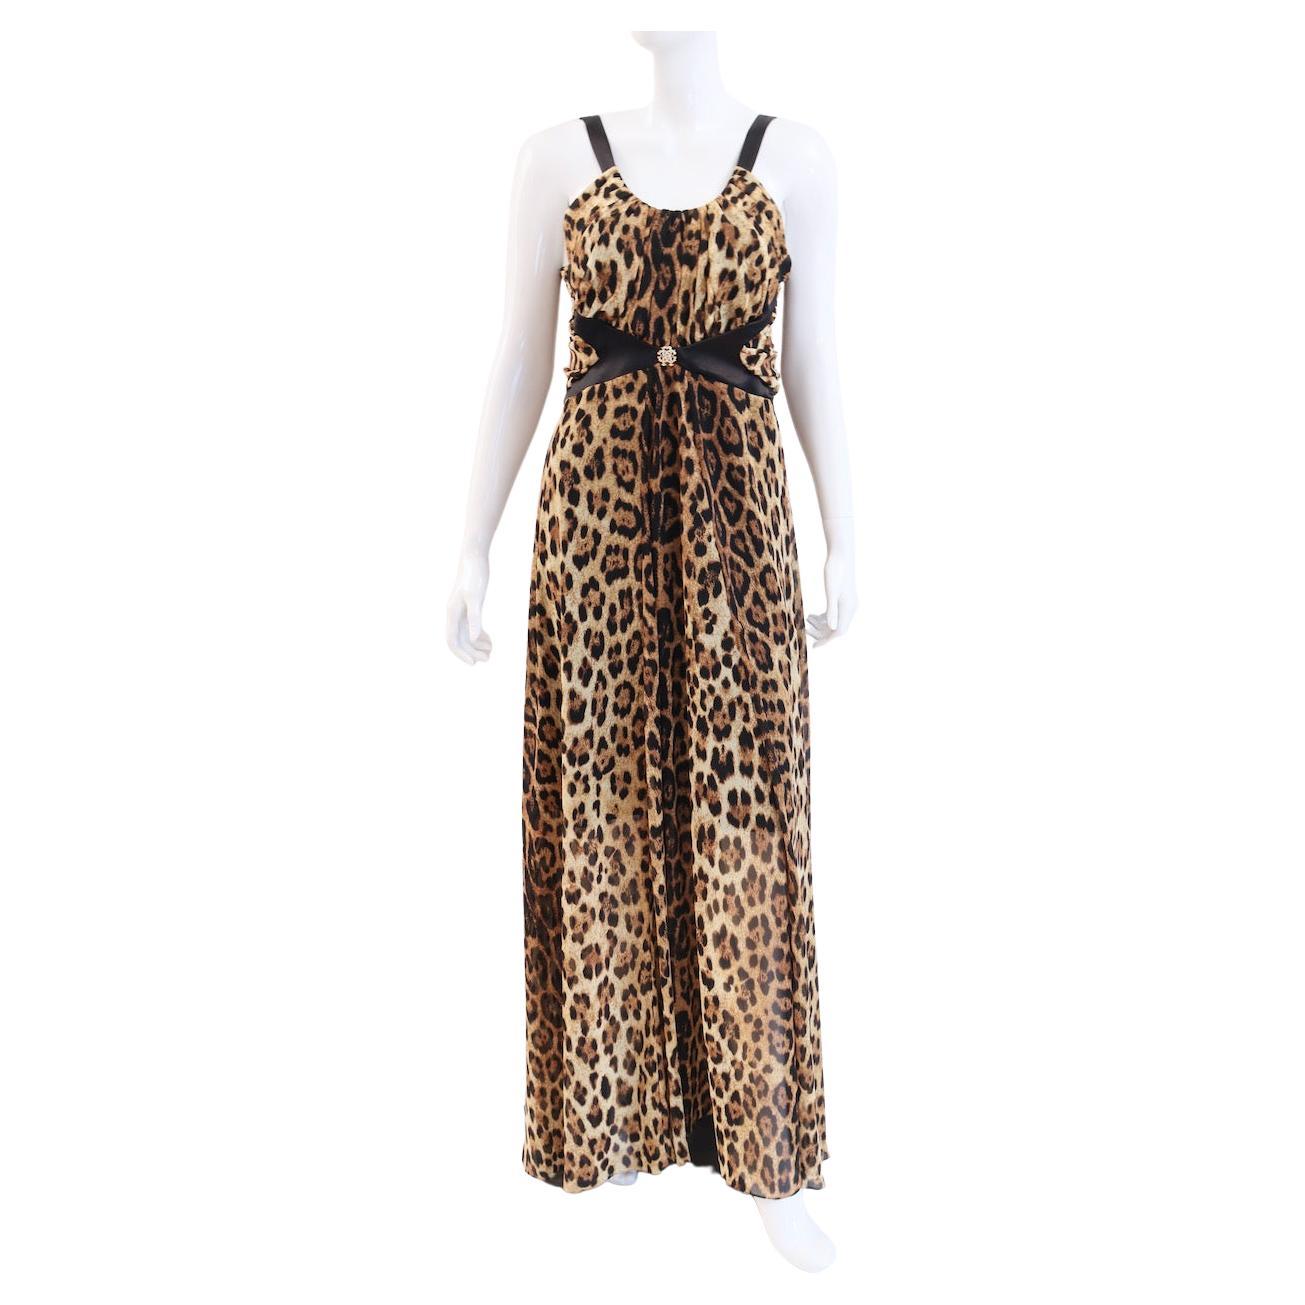 NEU ROBERTO CAVALLI Kleid mit Leopardenmuster